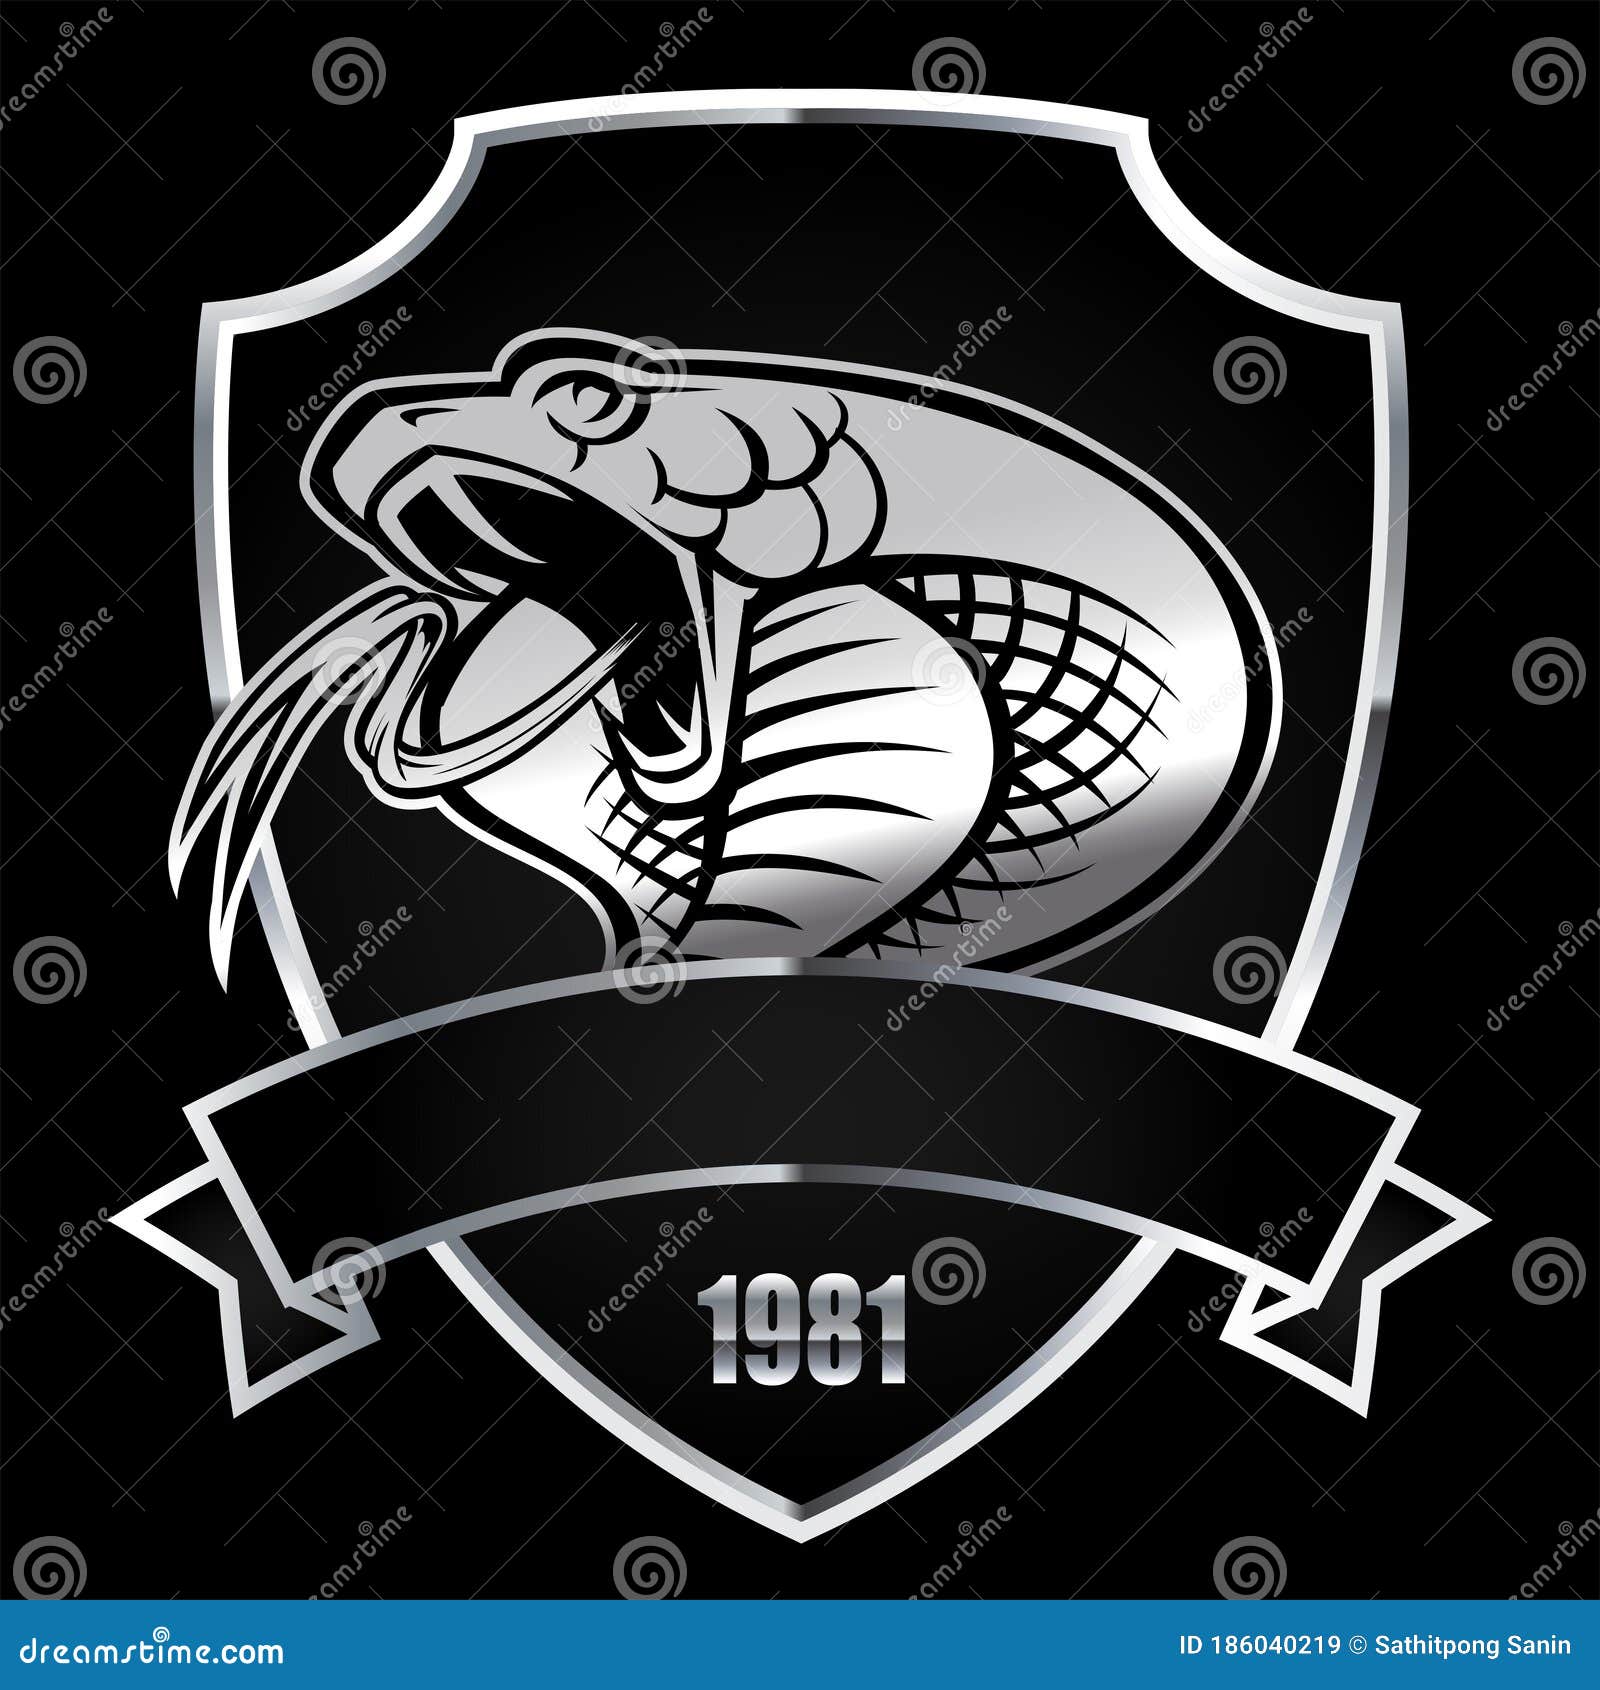 Bạn muốn thiết kế logo độc đáo, ấn tượng? Đừng bỏ qua hình ảnh đầu rắn cobra bạc trên nền đen. Sự uyển chuyển, đáng sợ của đầu rắn sẽ tạo nên một bộ logo khó quên để đại diện cho thương hiệu của bạn.